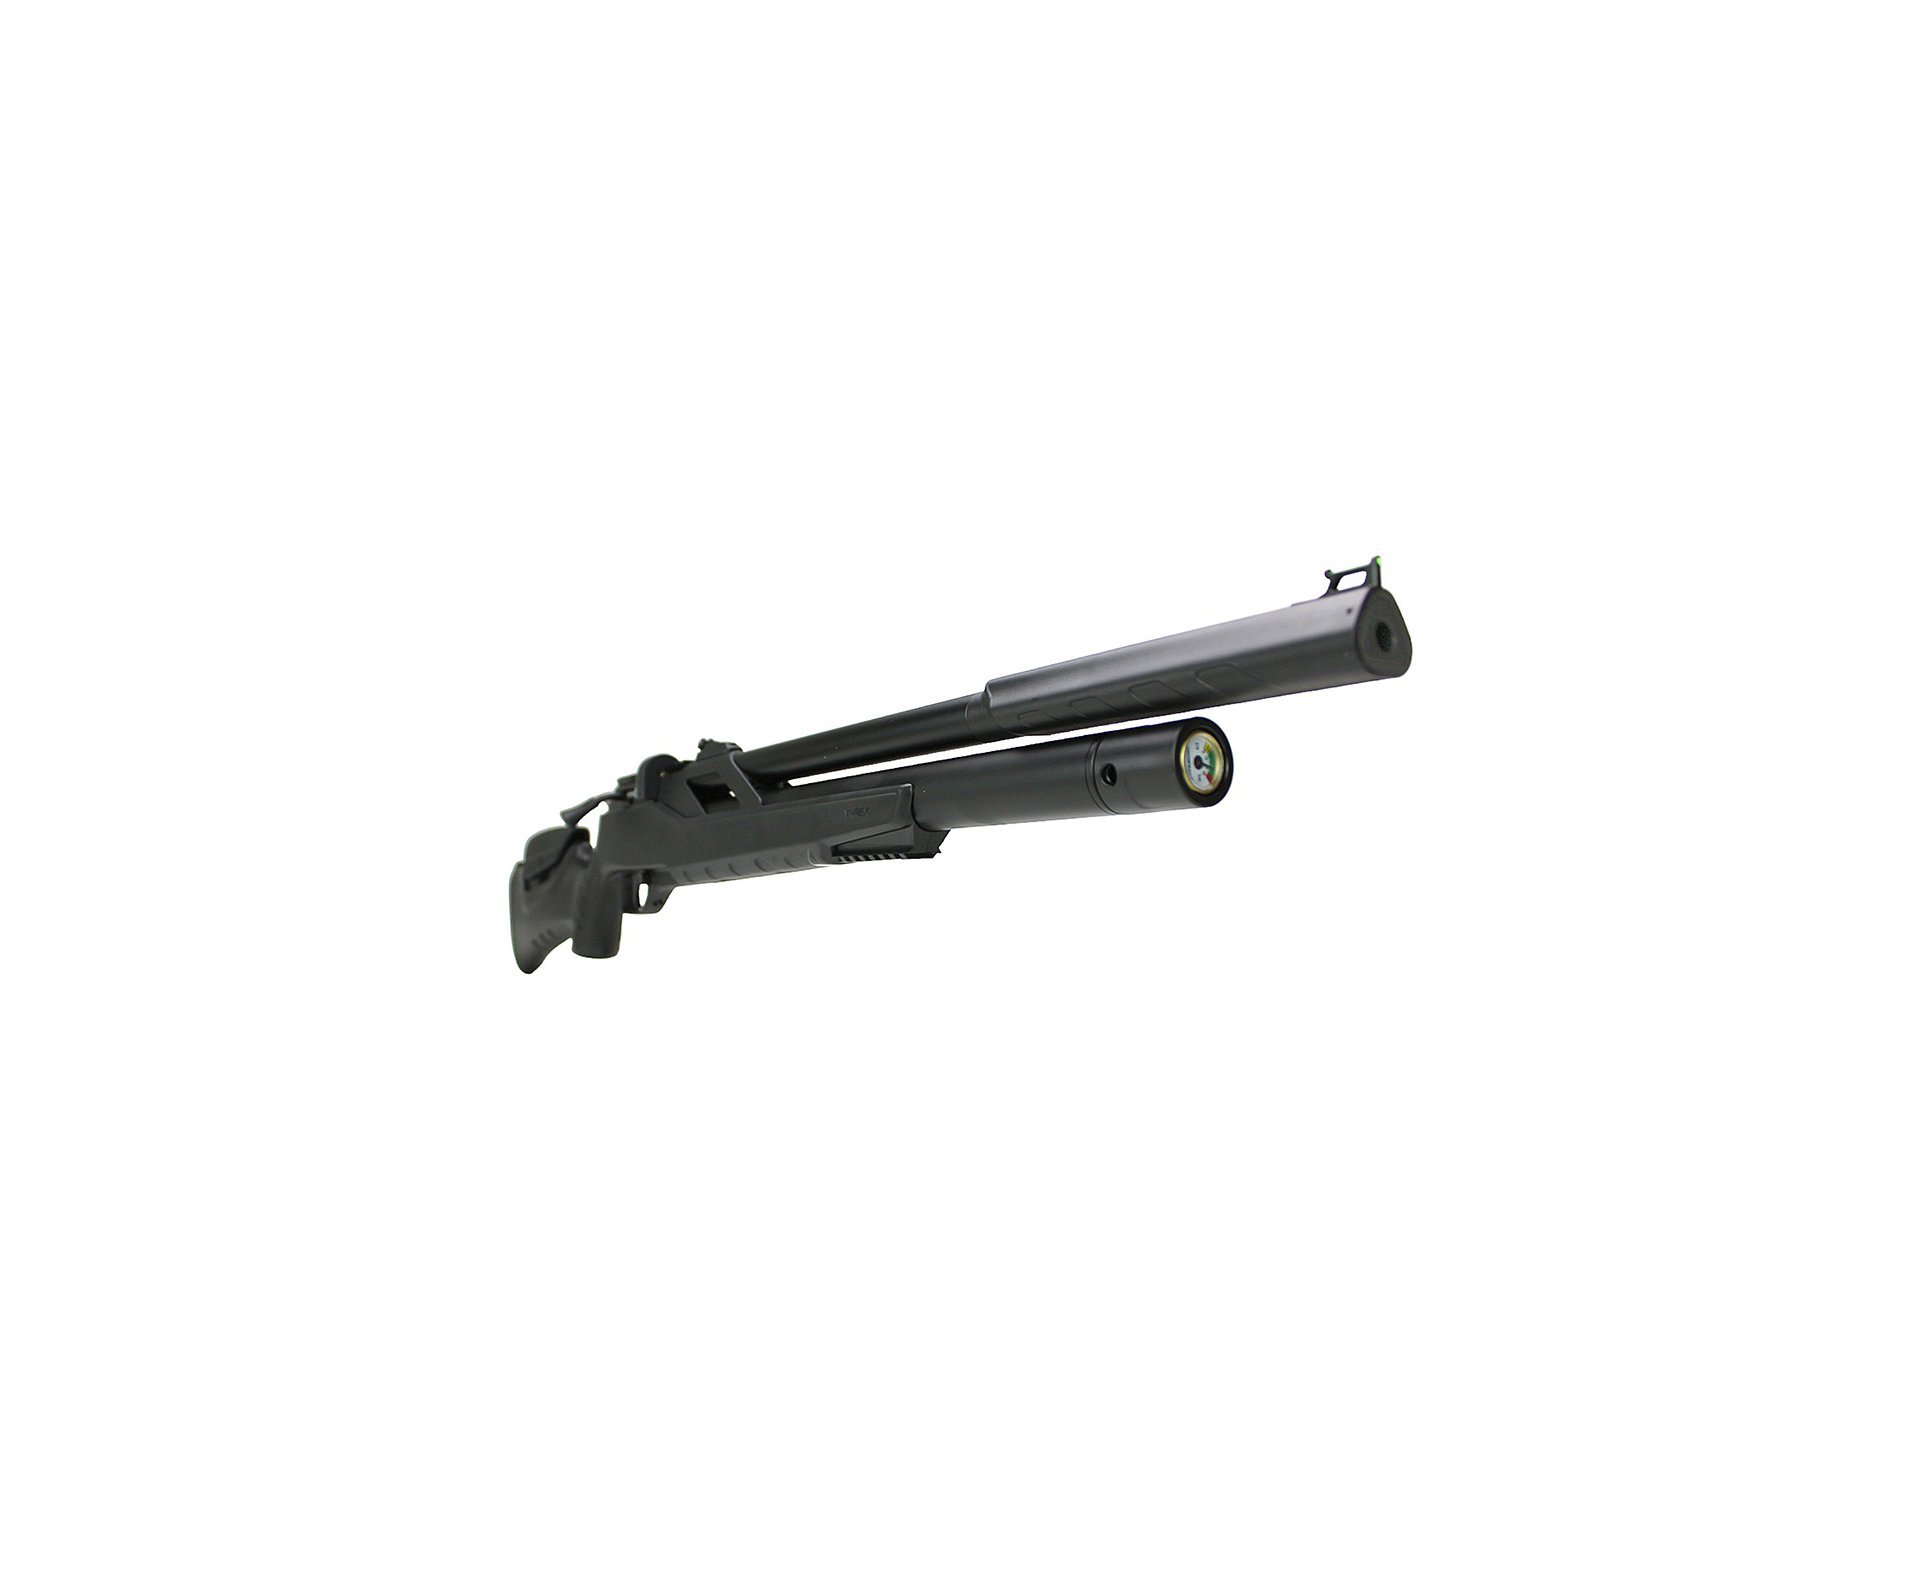 Carabina de Pressão PCP Artemis T-REX 5.5mm com Válvula Reguladora - Fixxar + Bomba + Luneta 4-16x50 + Mount